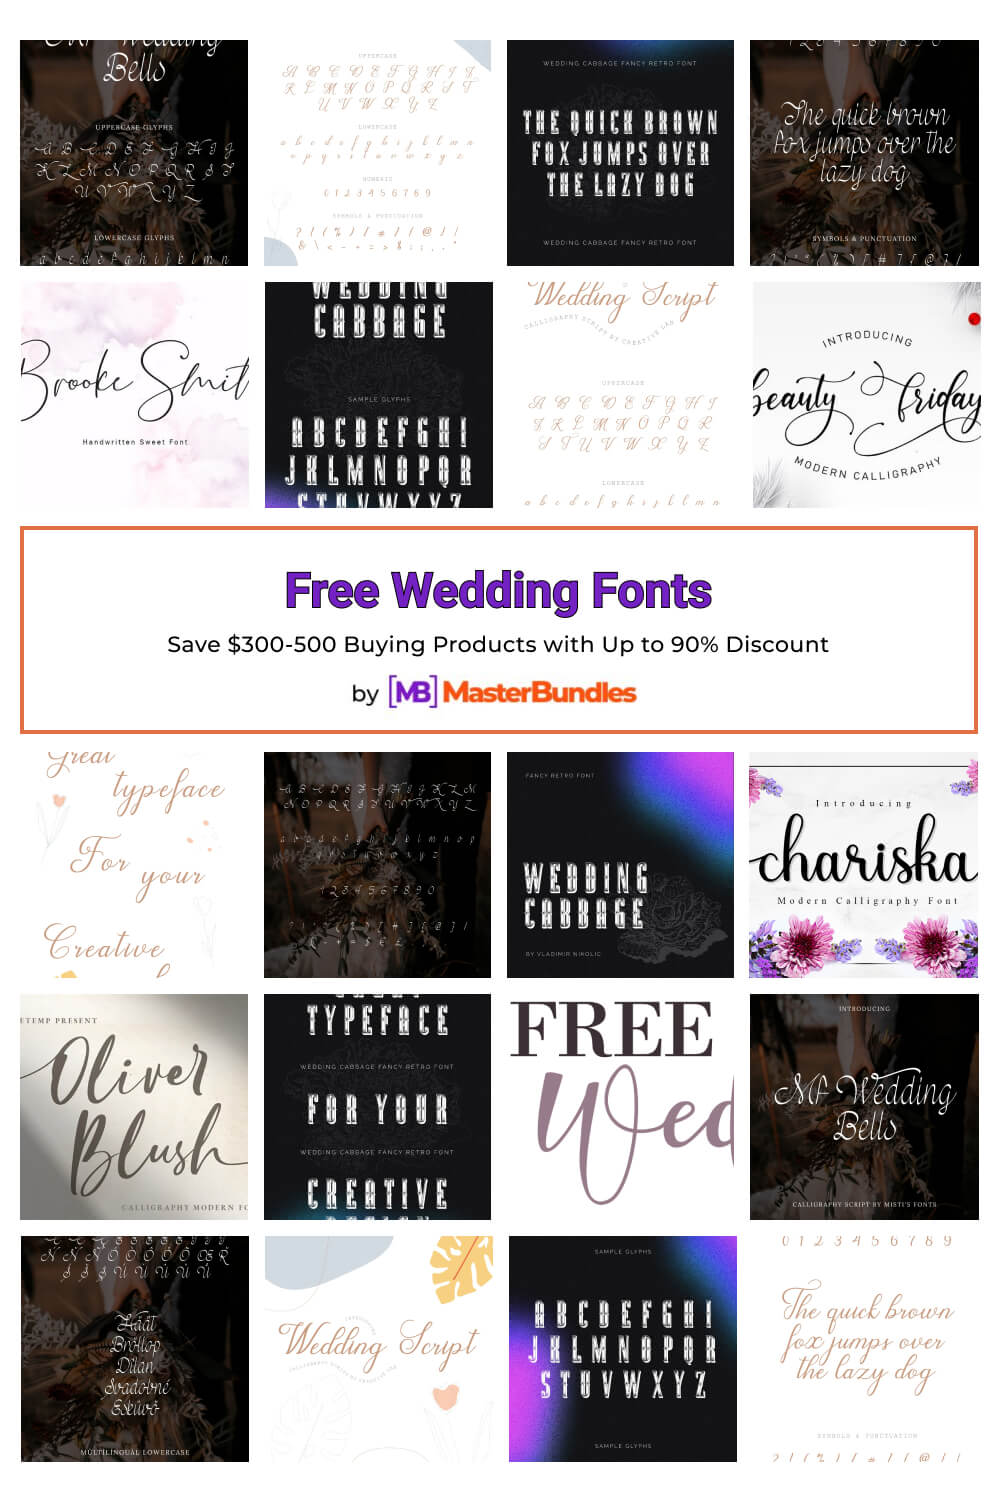 free wedding fonts pinterest image.